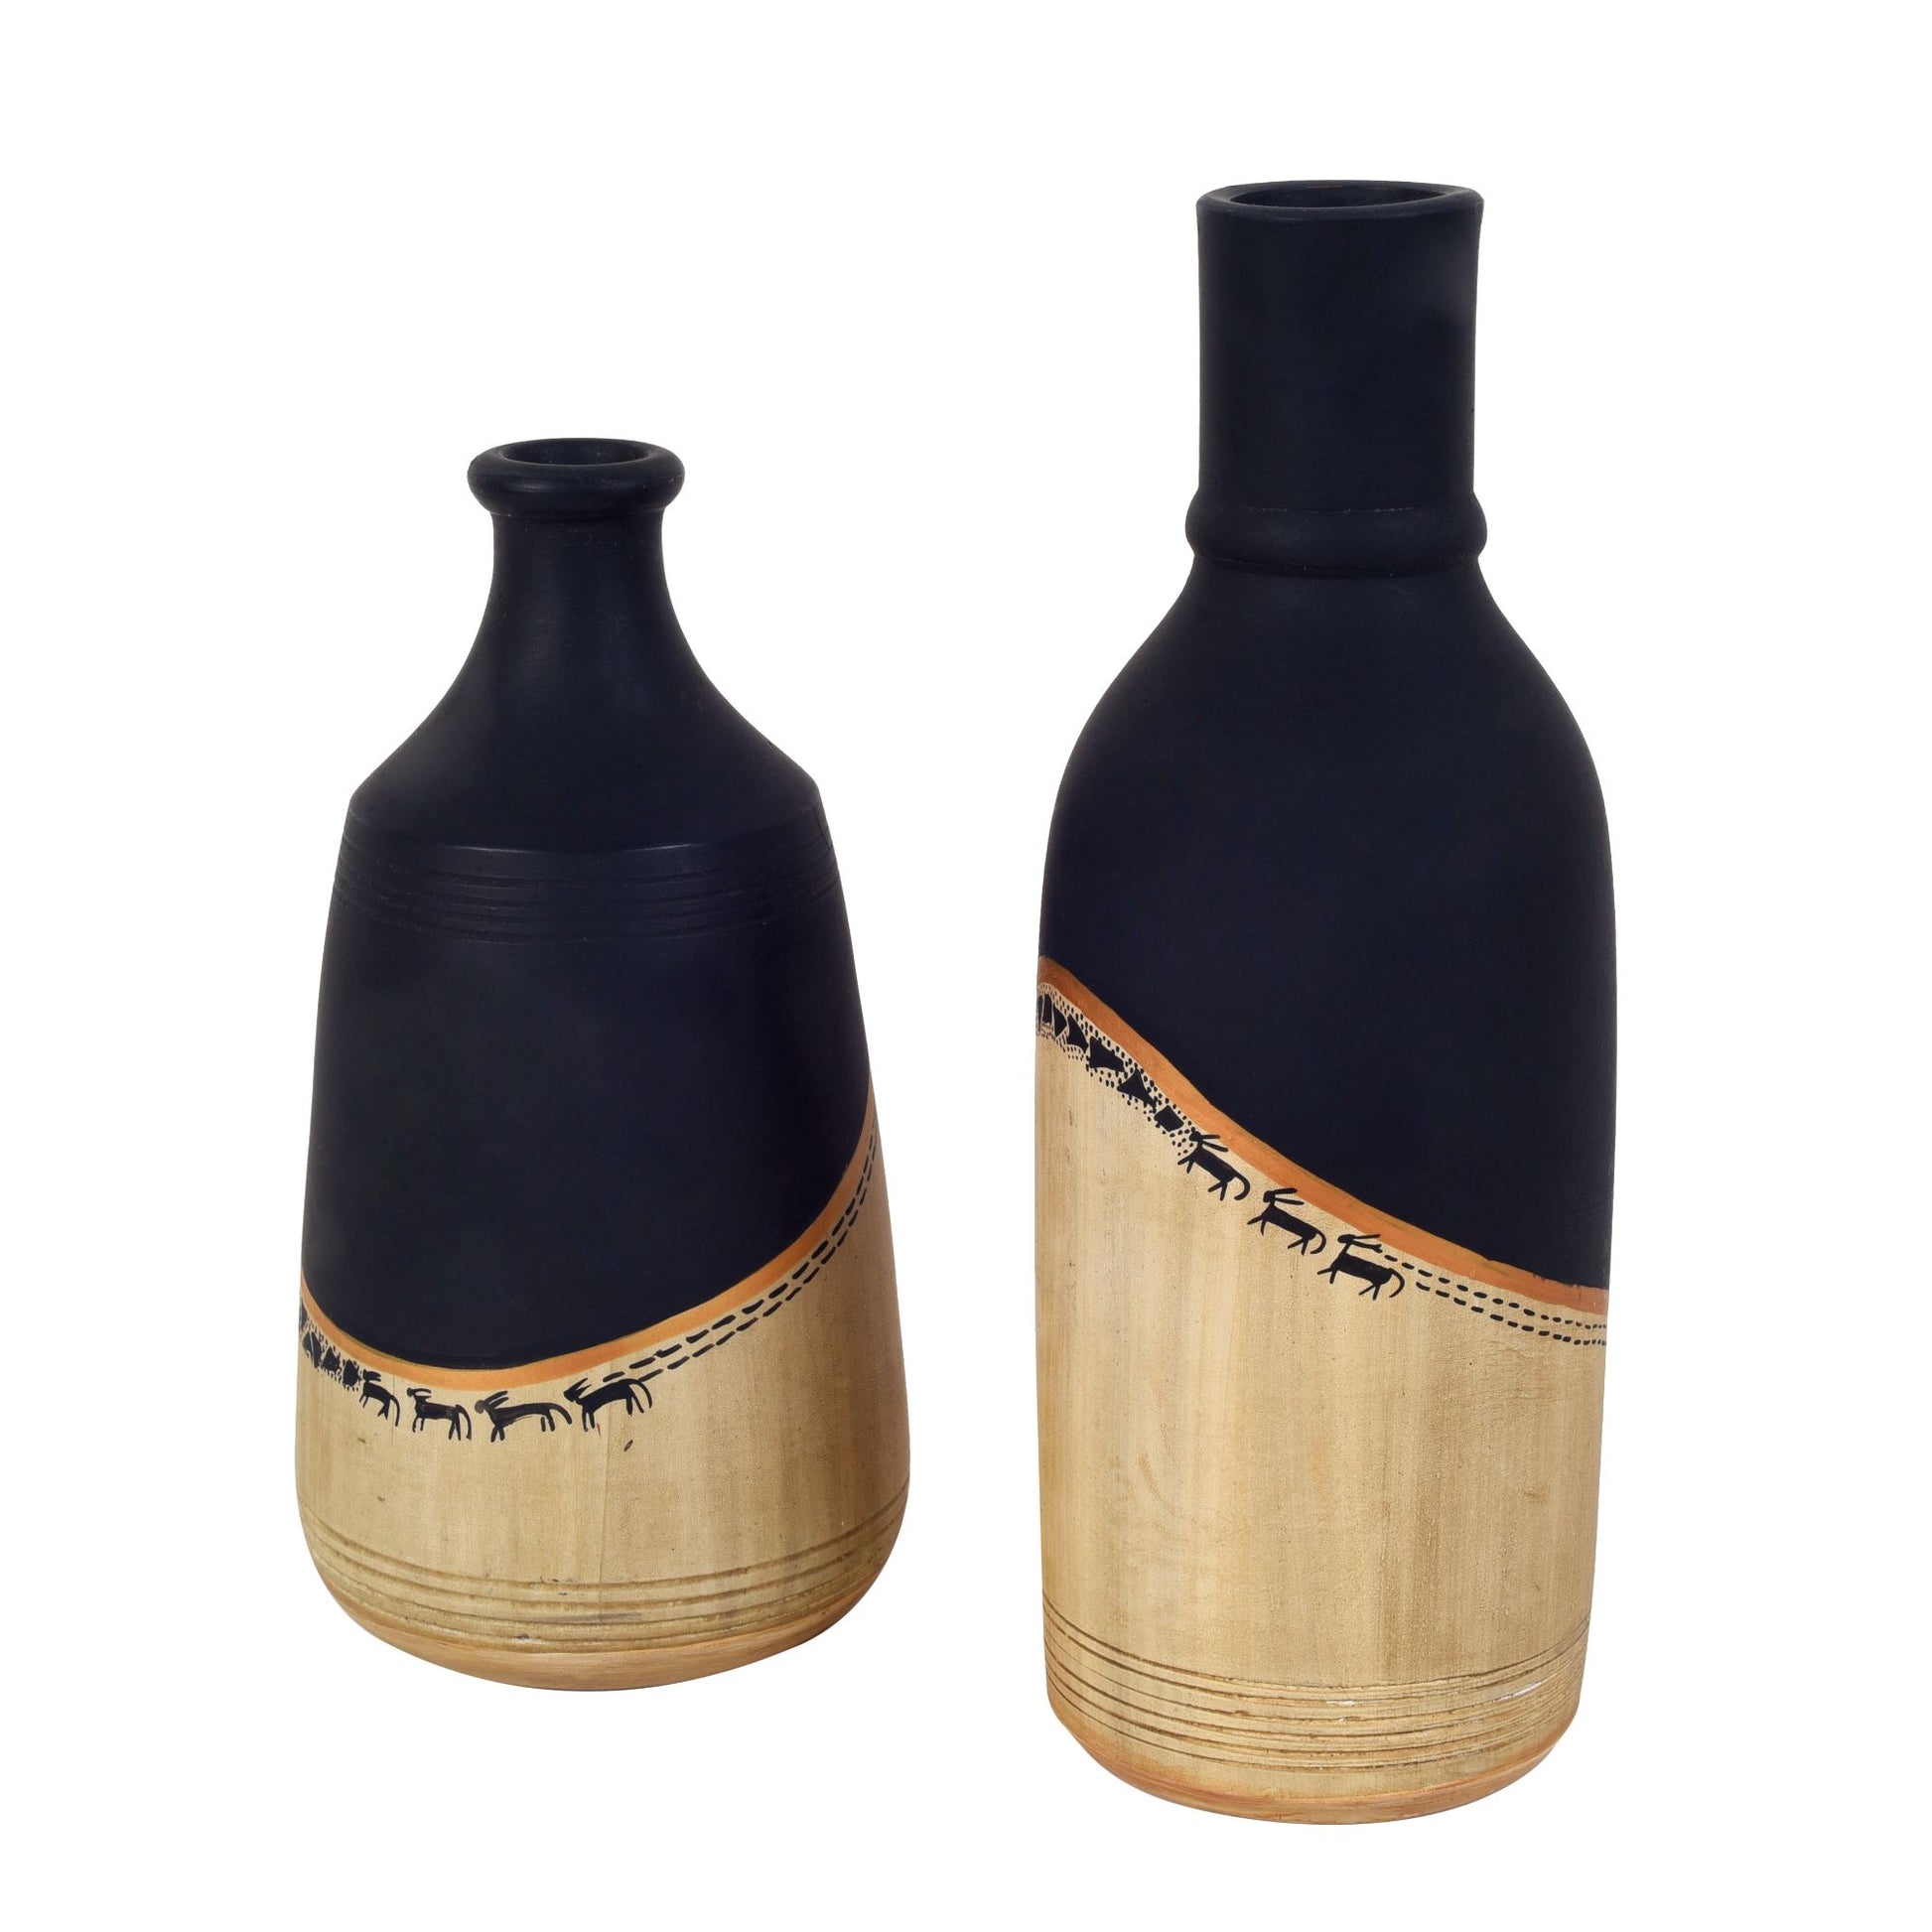 handmade vases